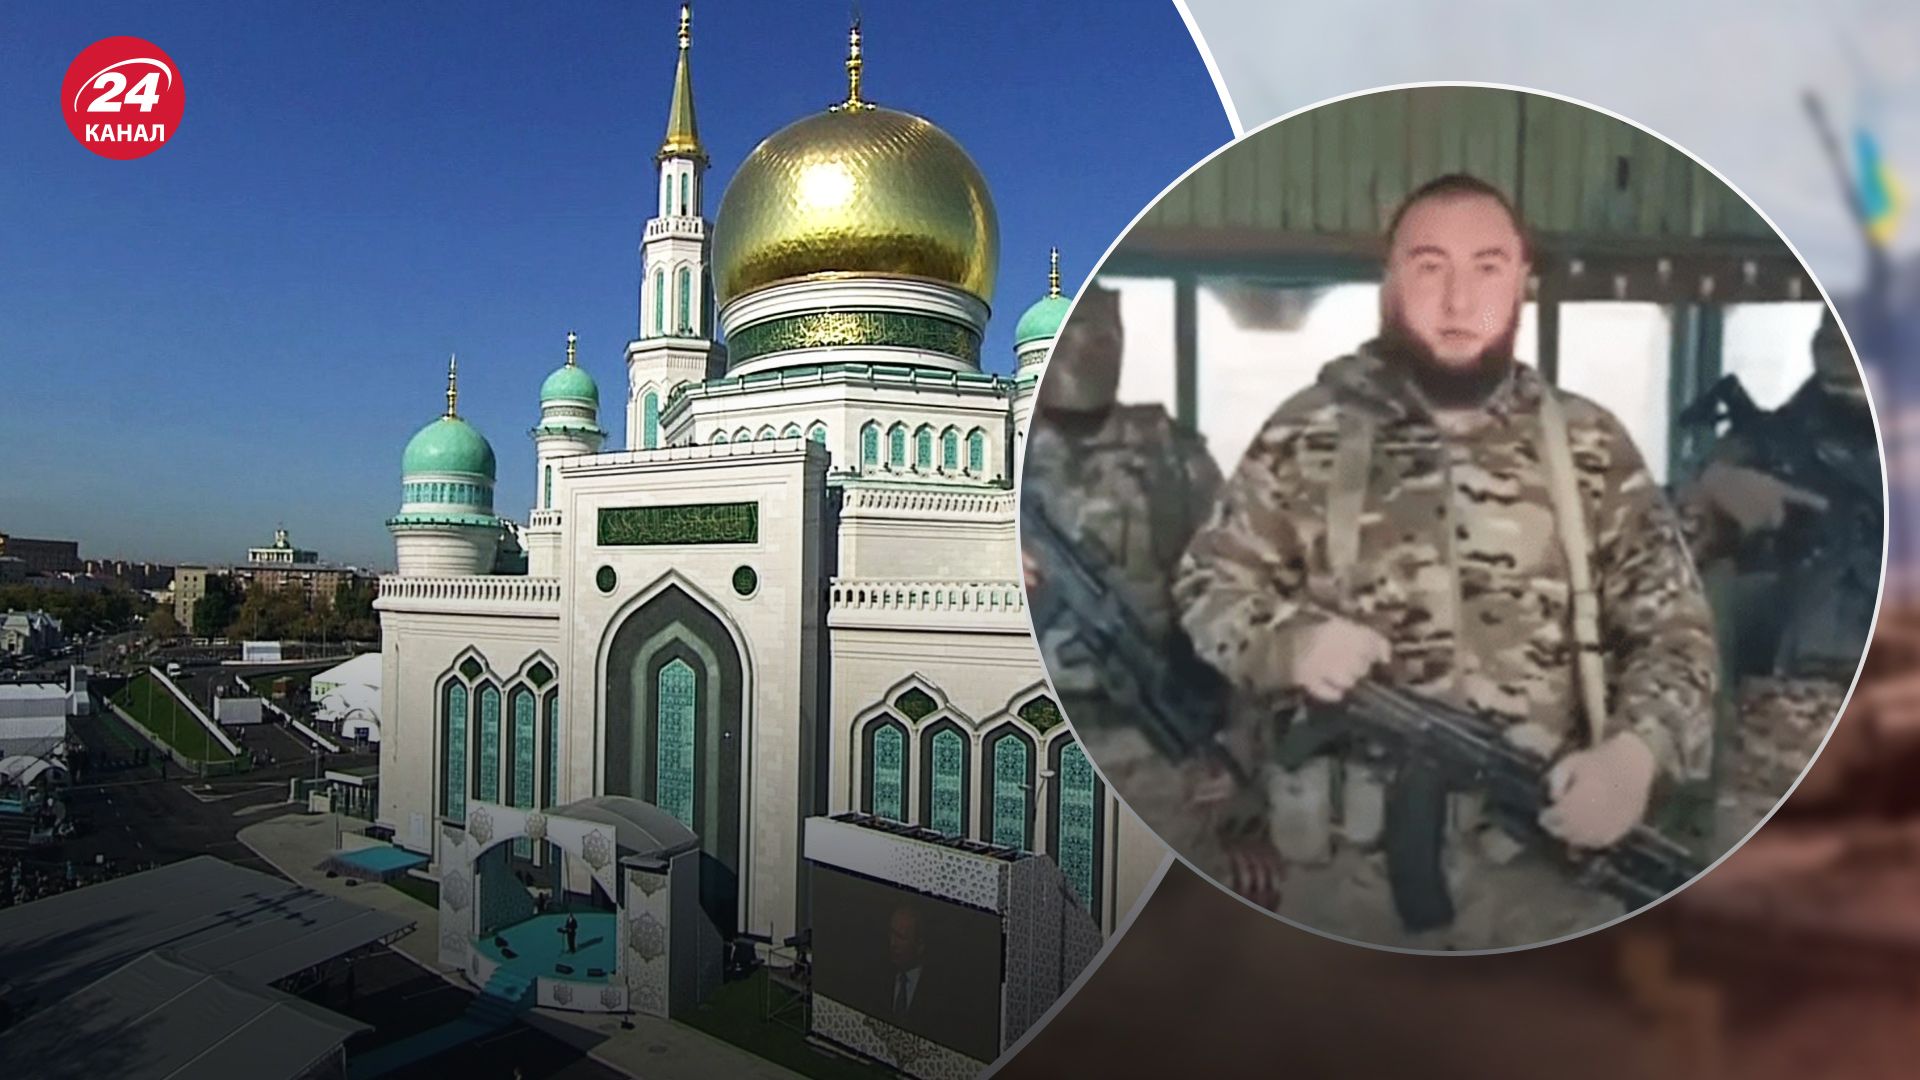 Кадирівці хочуть вбивати росіян через будівництво мечеті